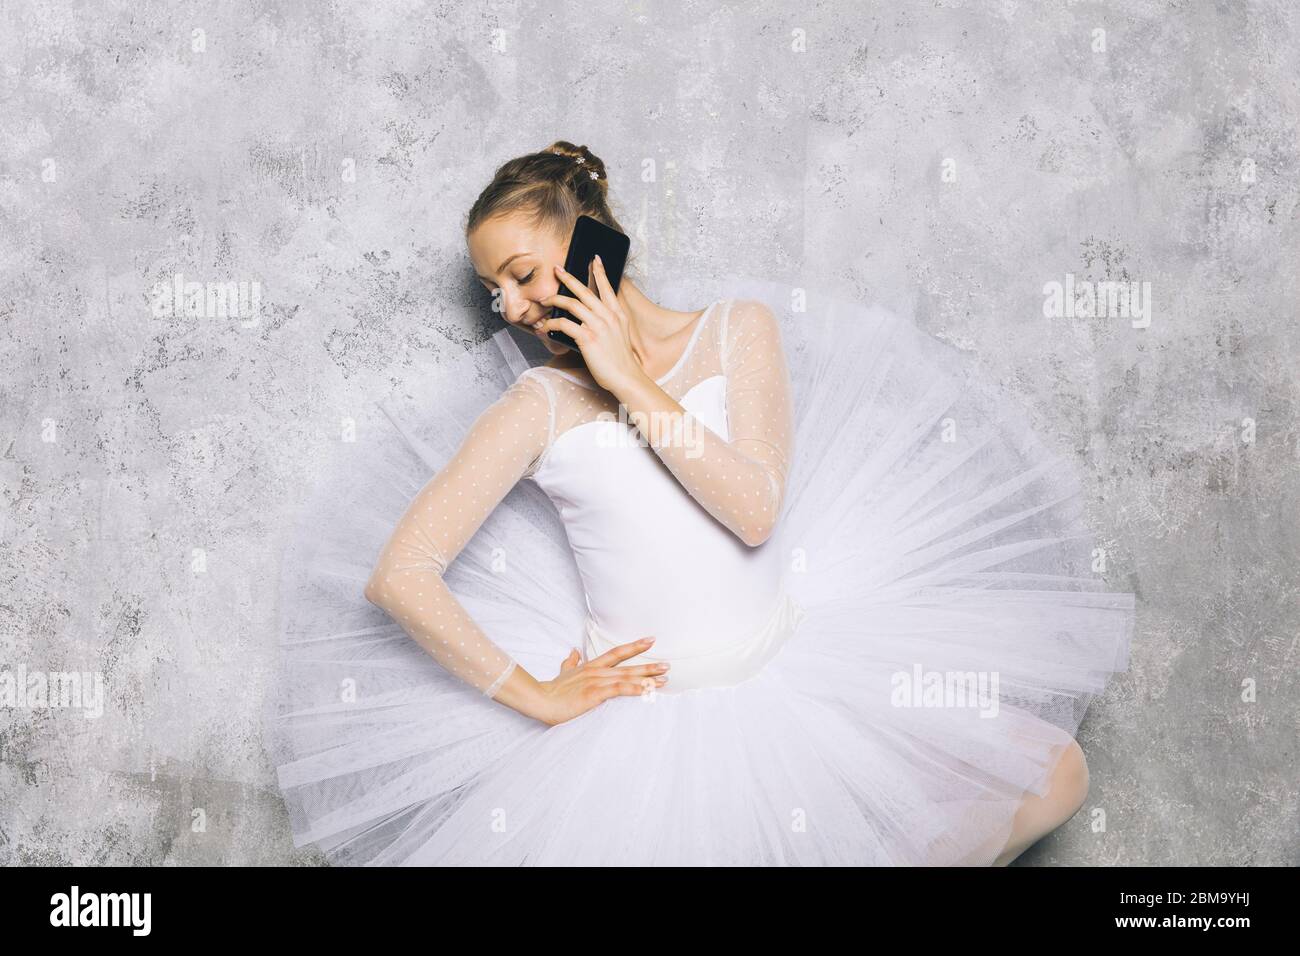 Ballerina giovane ballerina ballerina classica ballerina utilizzando il telefono cellulare contro il muro rustico Foto Stock